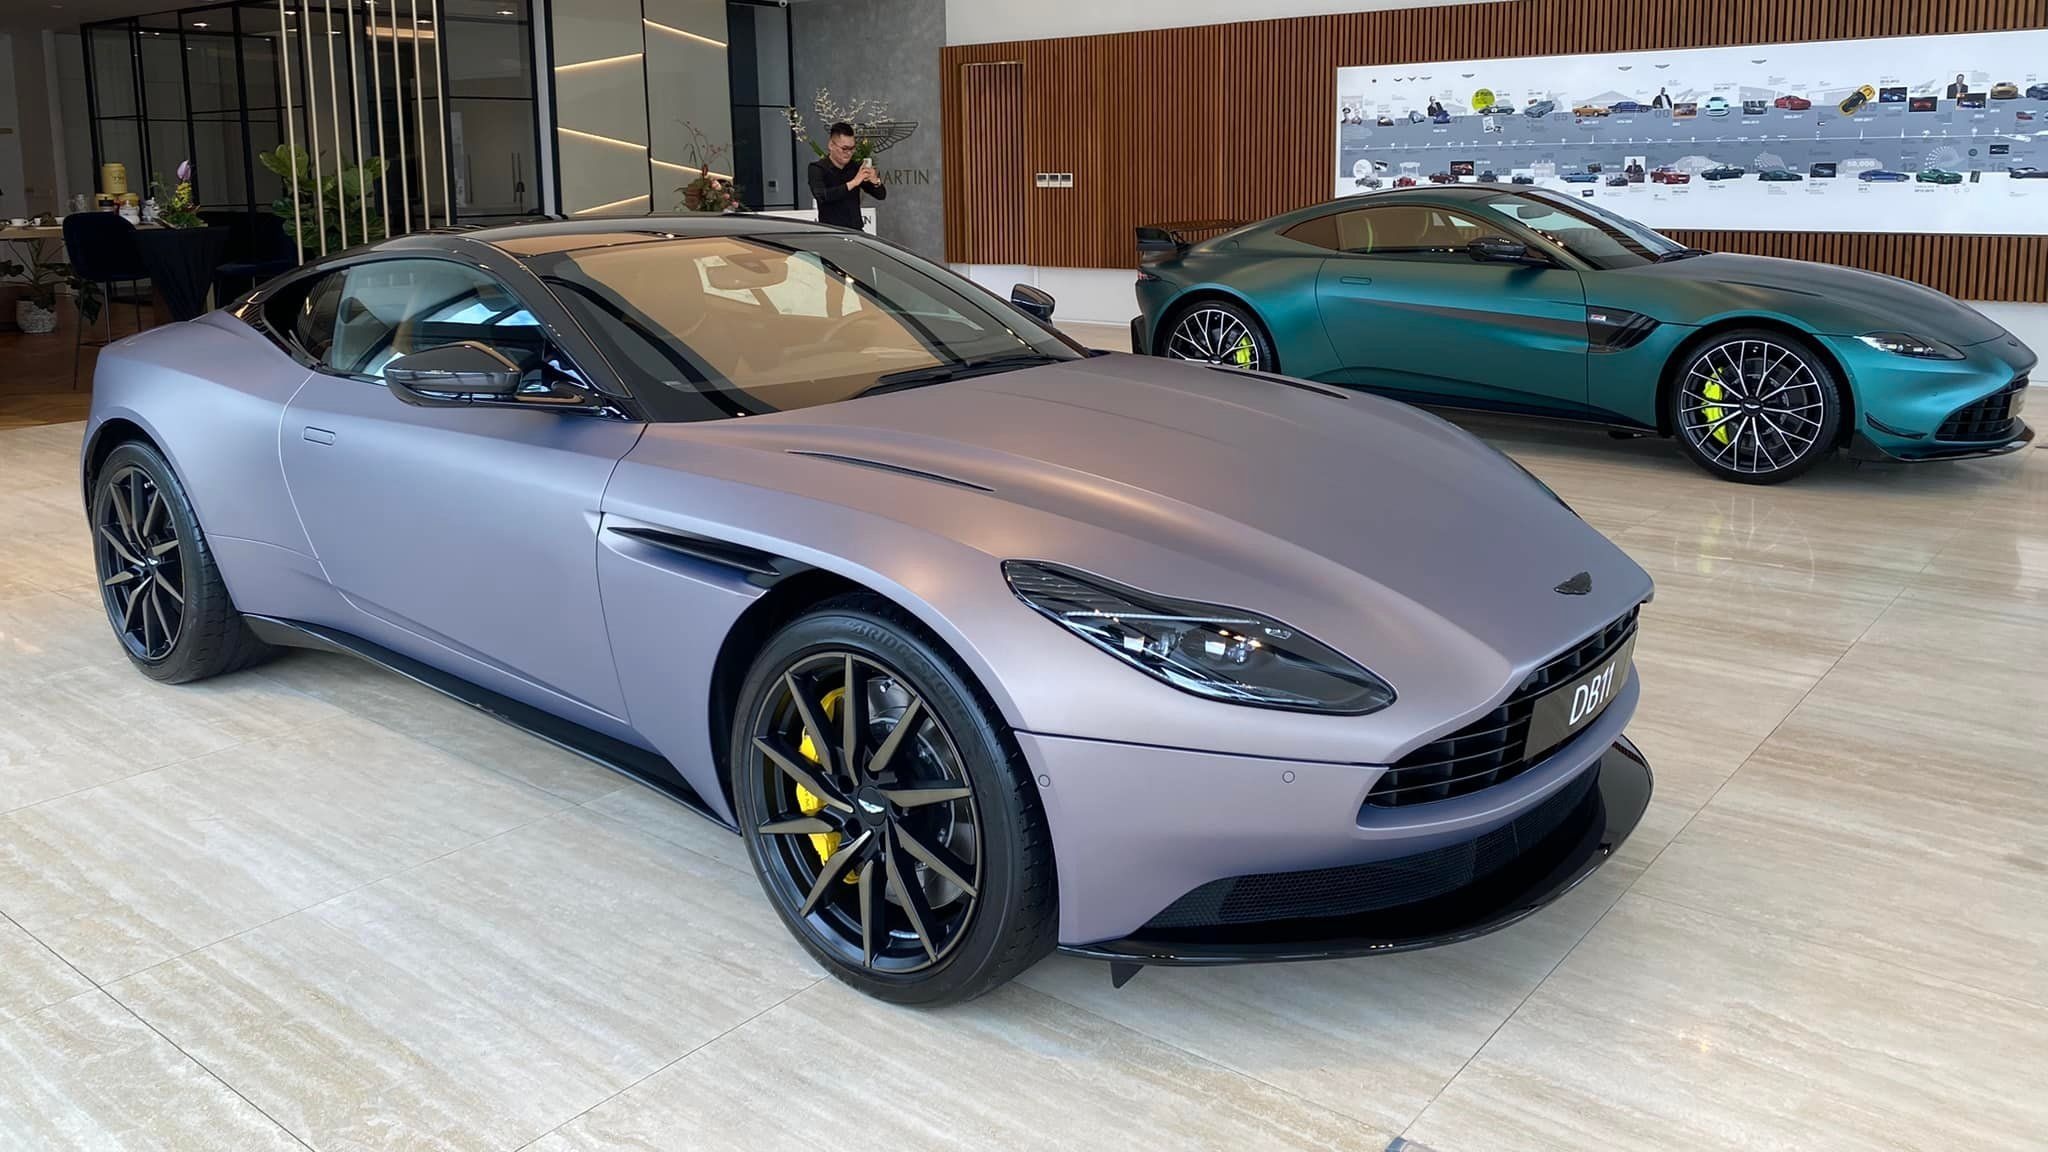 Bộ đôi siêu xe Aston Martin giá gần 40 tỉ đồng về Việt Nam - ảnh 1